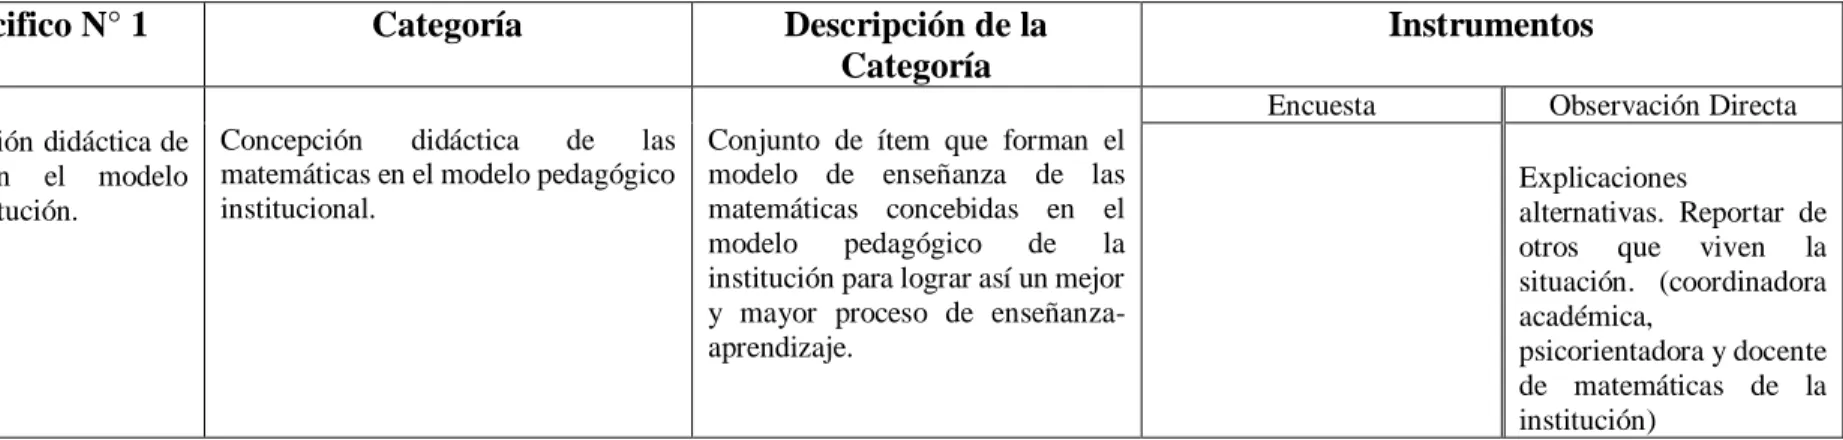 TABLA 3. SUMINISTRO DE DATOS Y CATEGORIZACIÓN. 